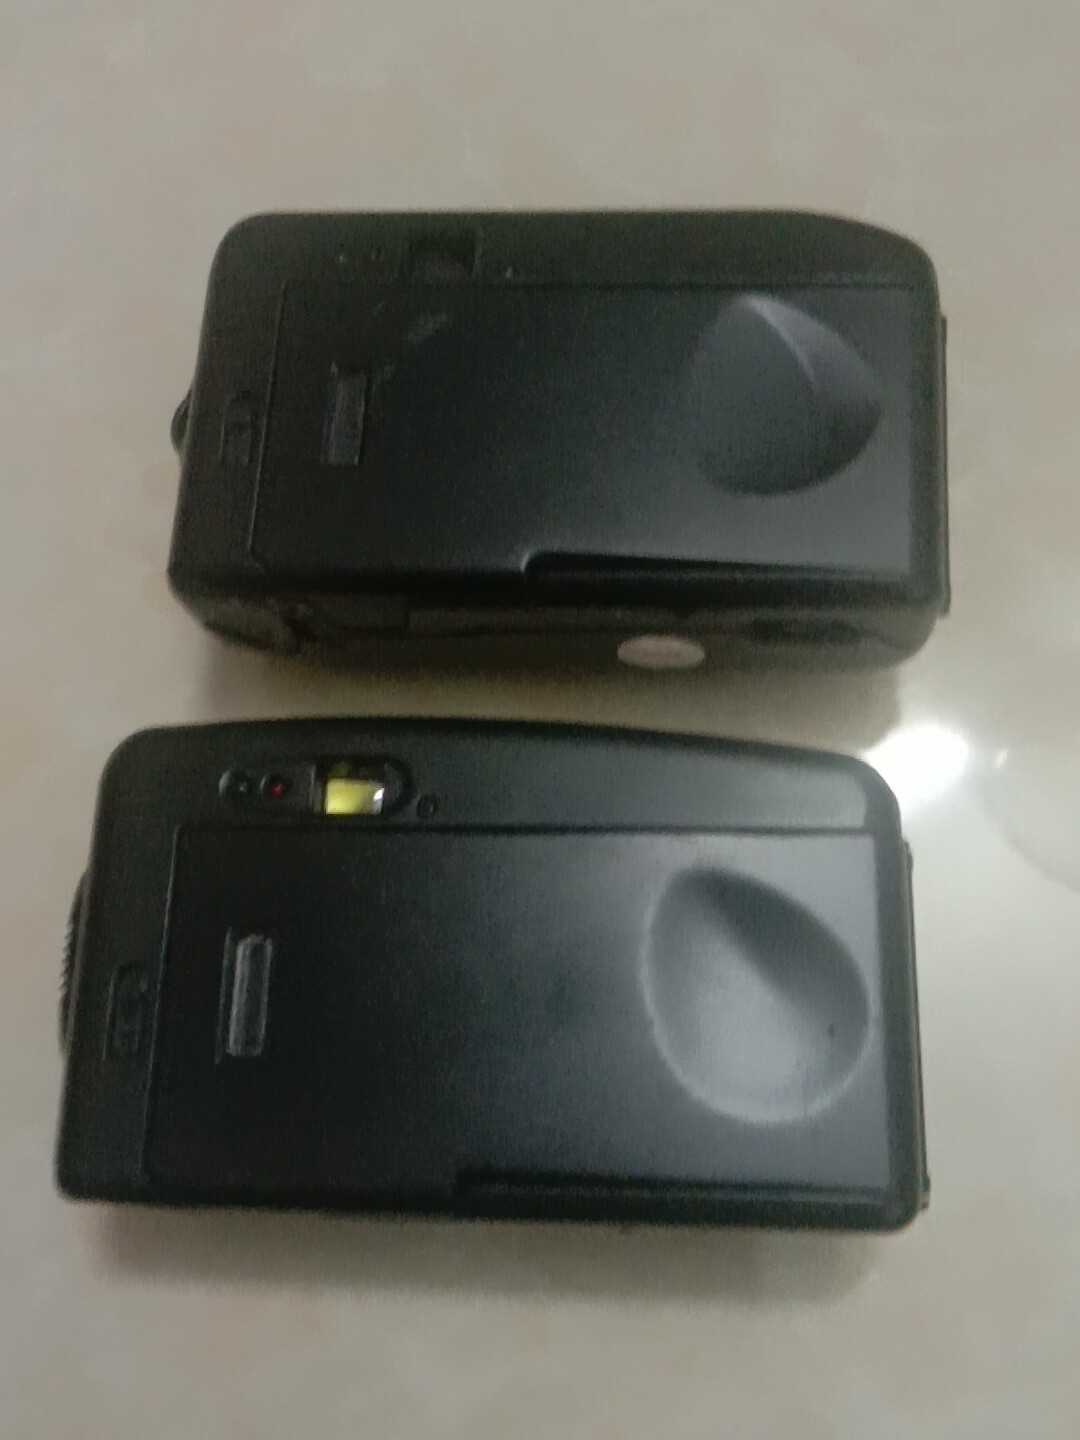 现出两台腾马 M-900.M-800相机 ，全新 没外包装